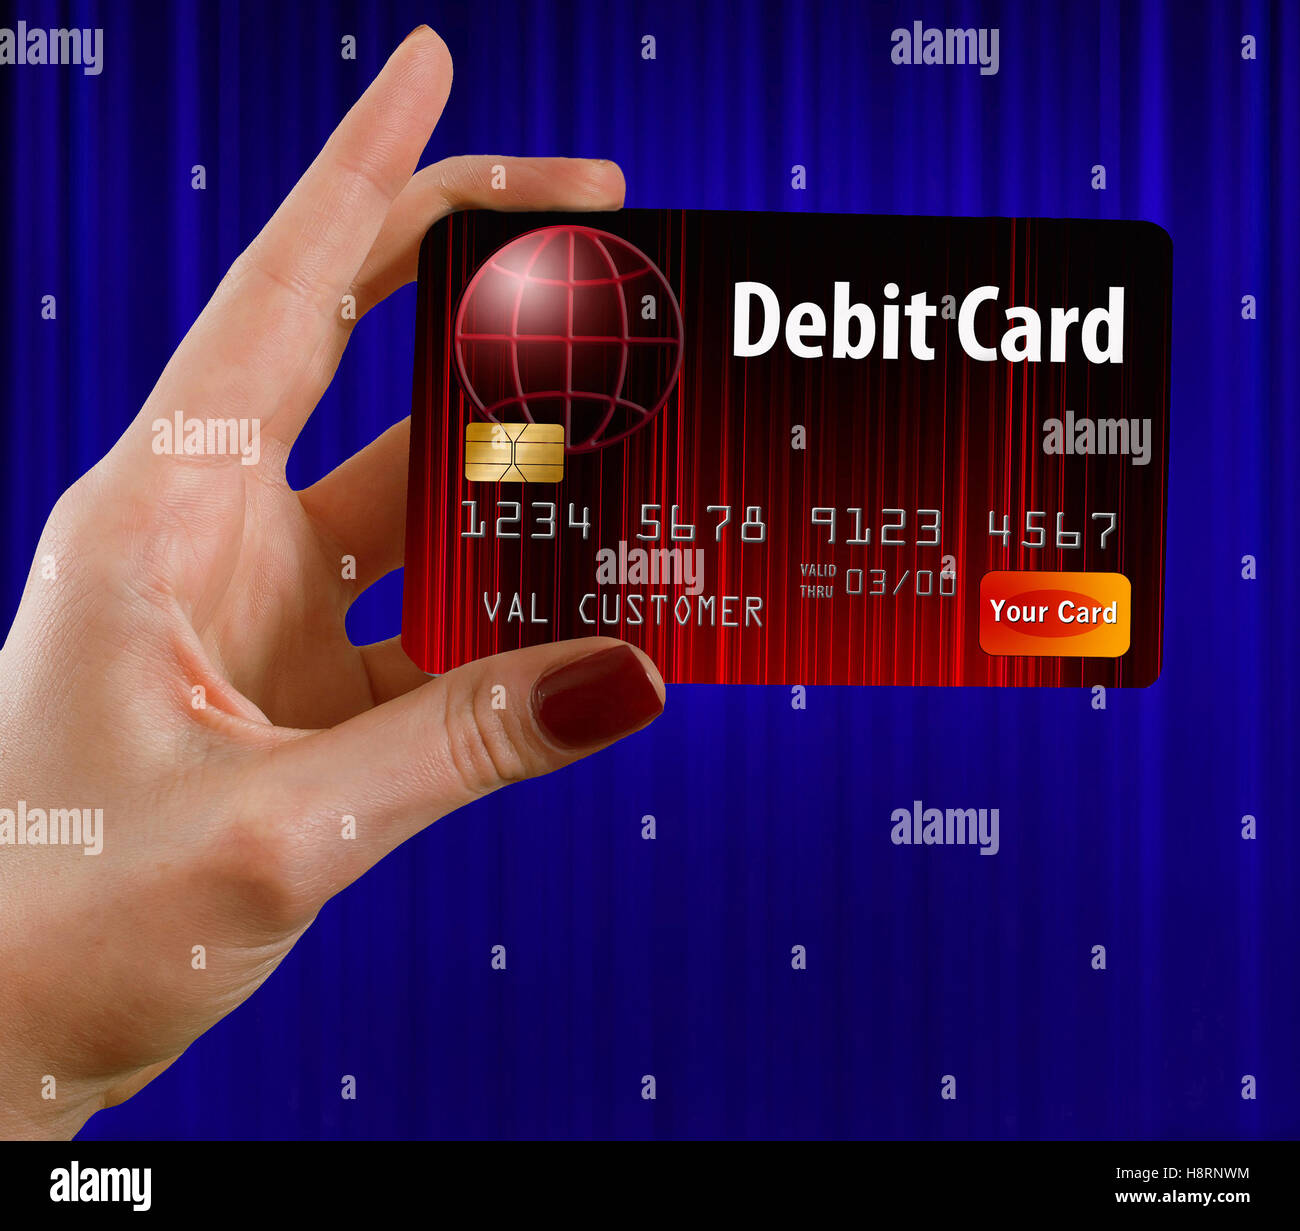 Eine weibliche Hand hält eine Debit Karte das ist rot und schwarz. vor einem blauen Vorhang. Dies ist ein Foto Illustration kombinieren Foto Stockfoto